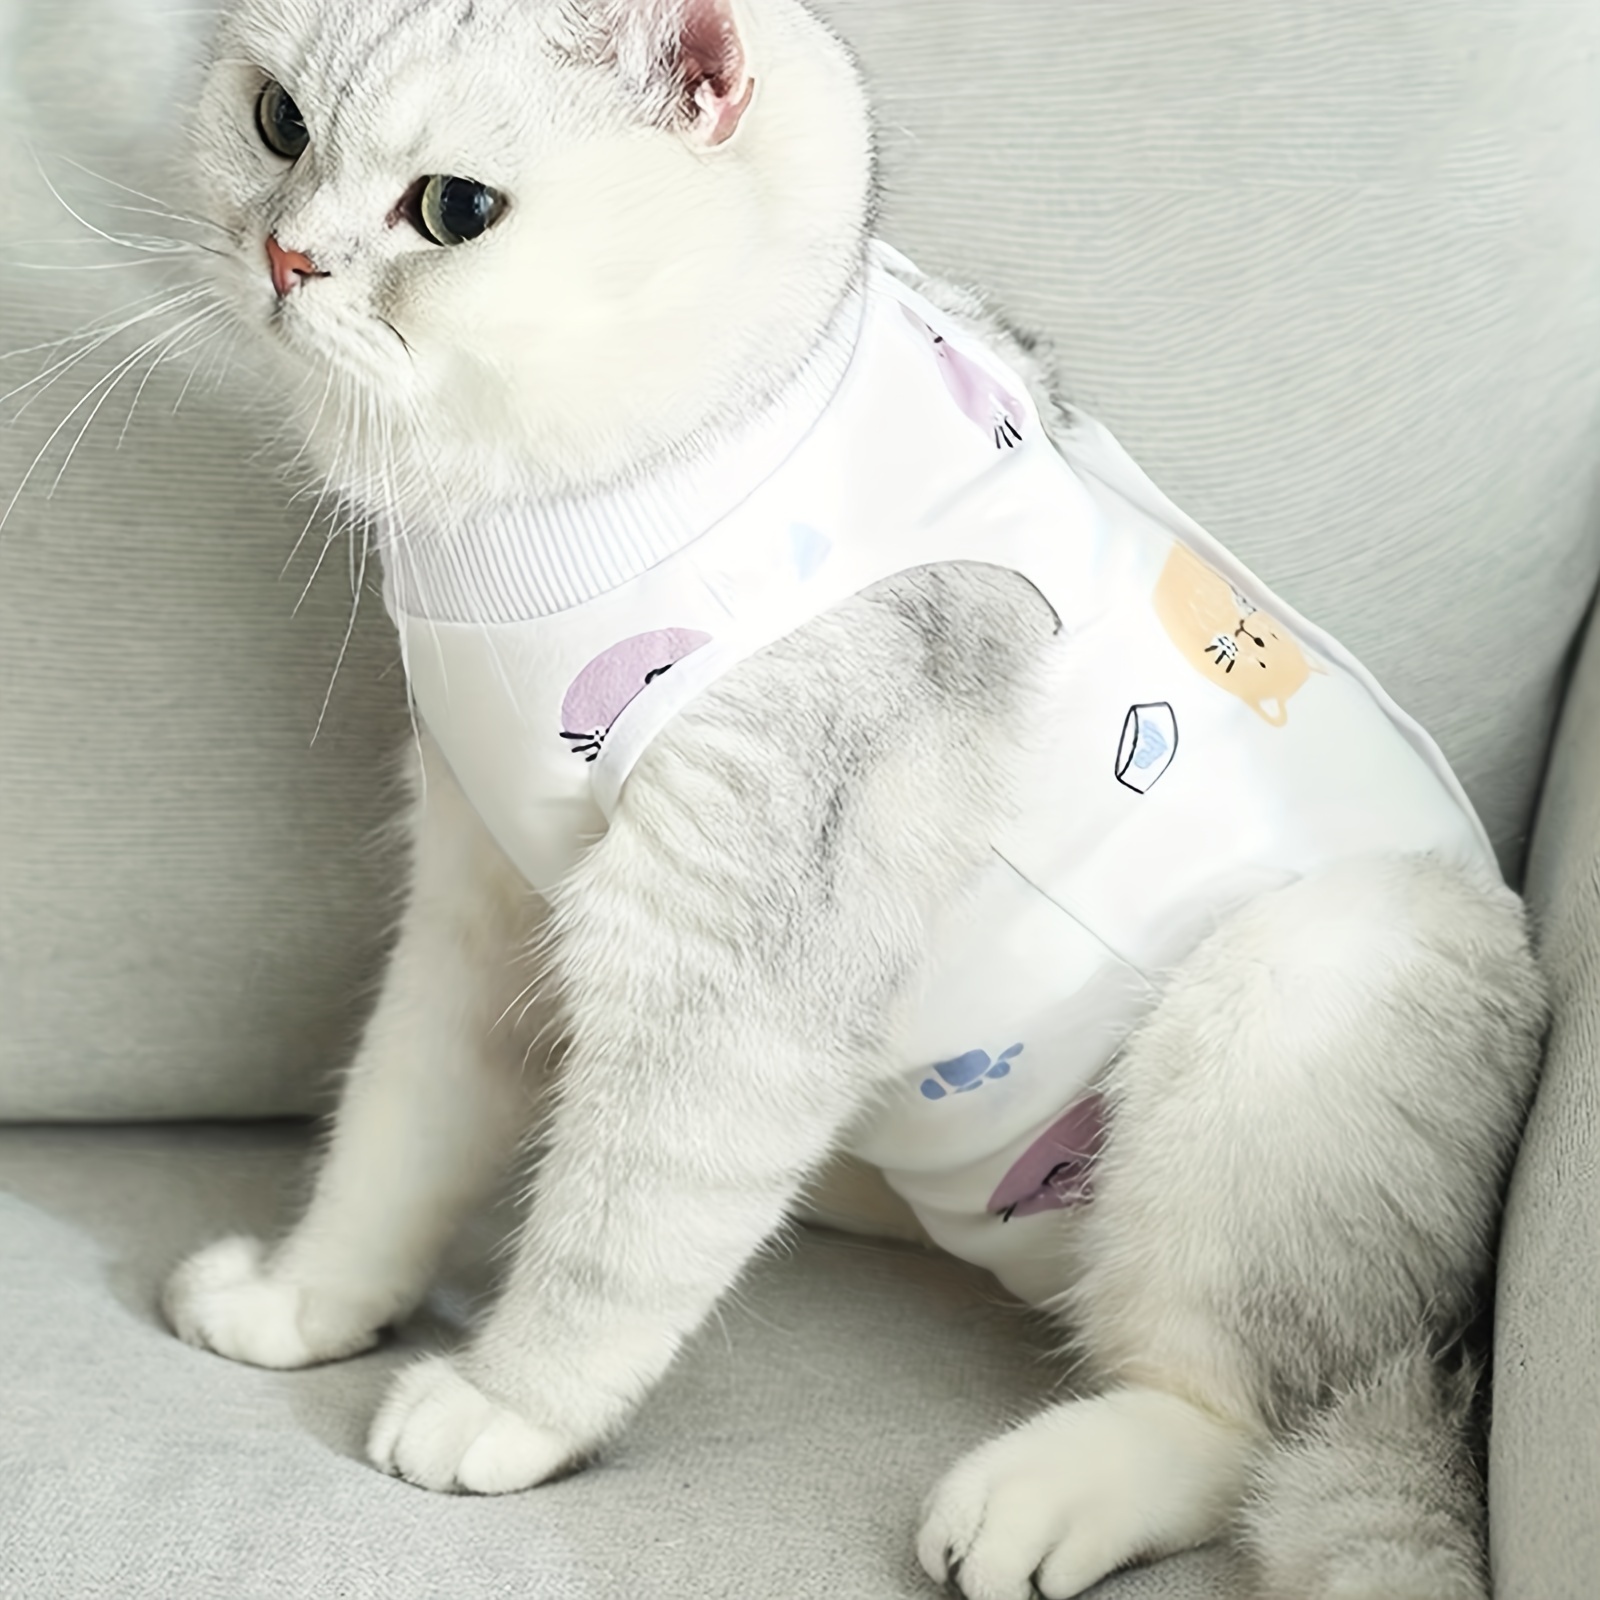 Cat Neutering Suit Surgical Rehabilitation Pet Clothing Prevent